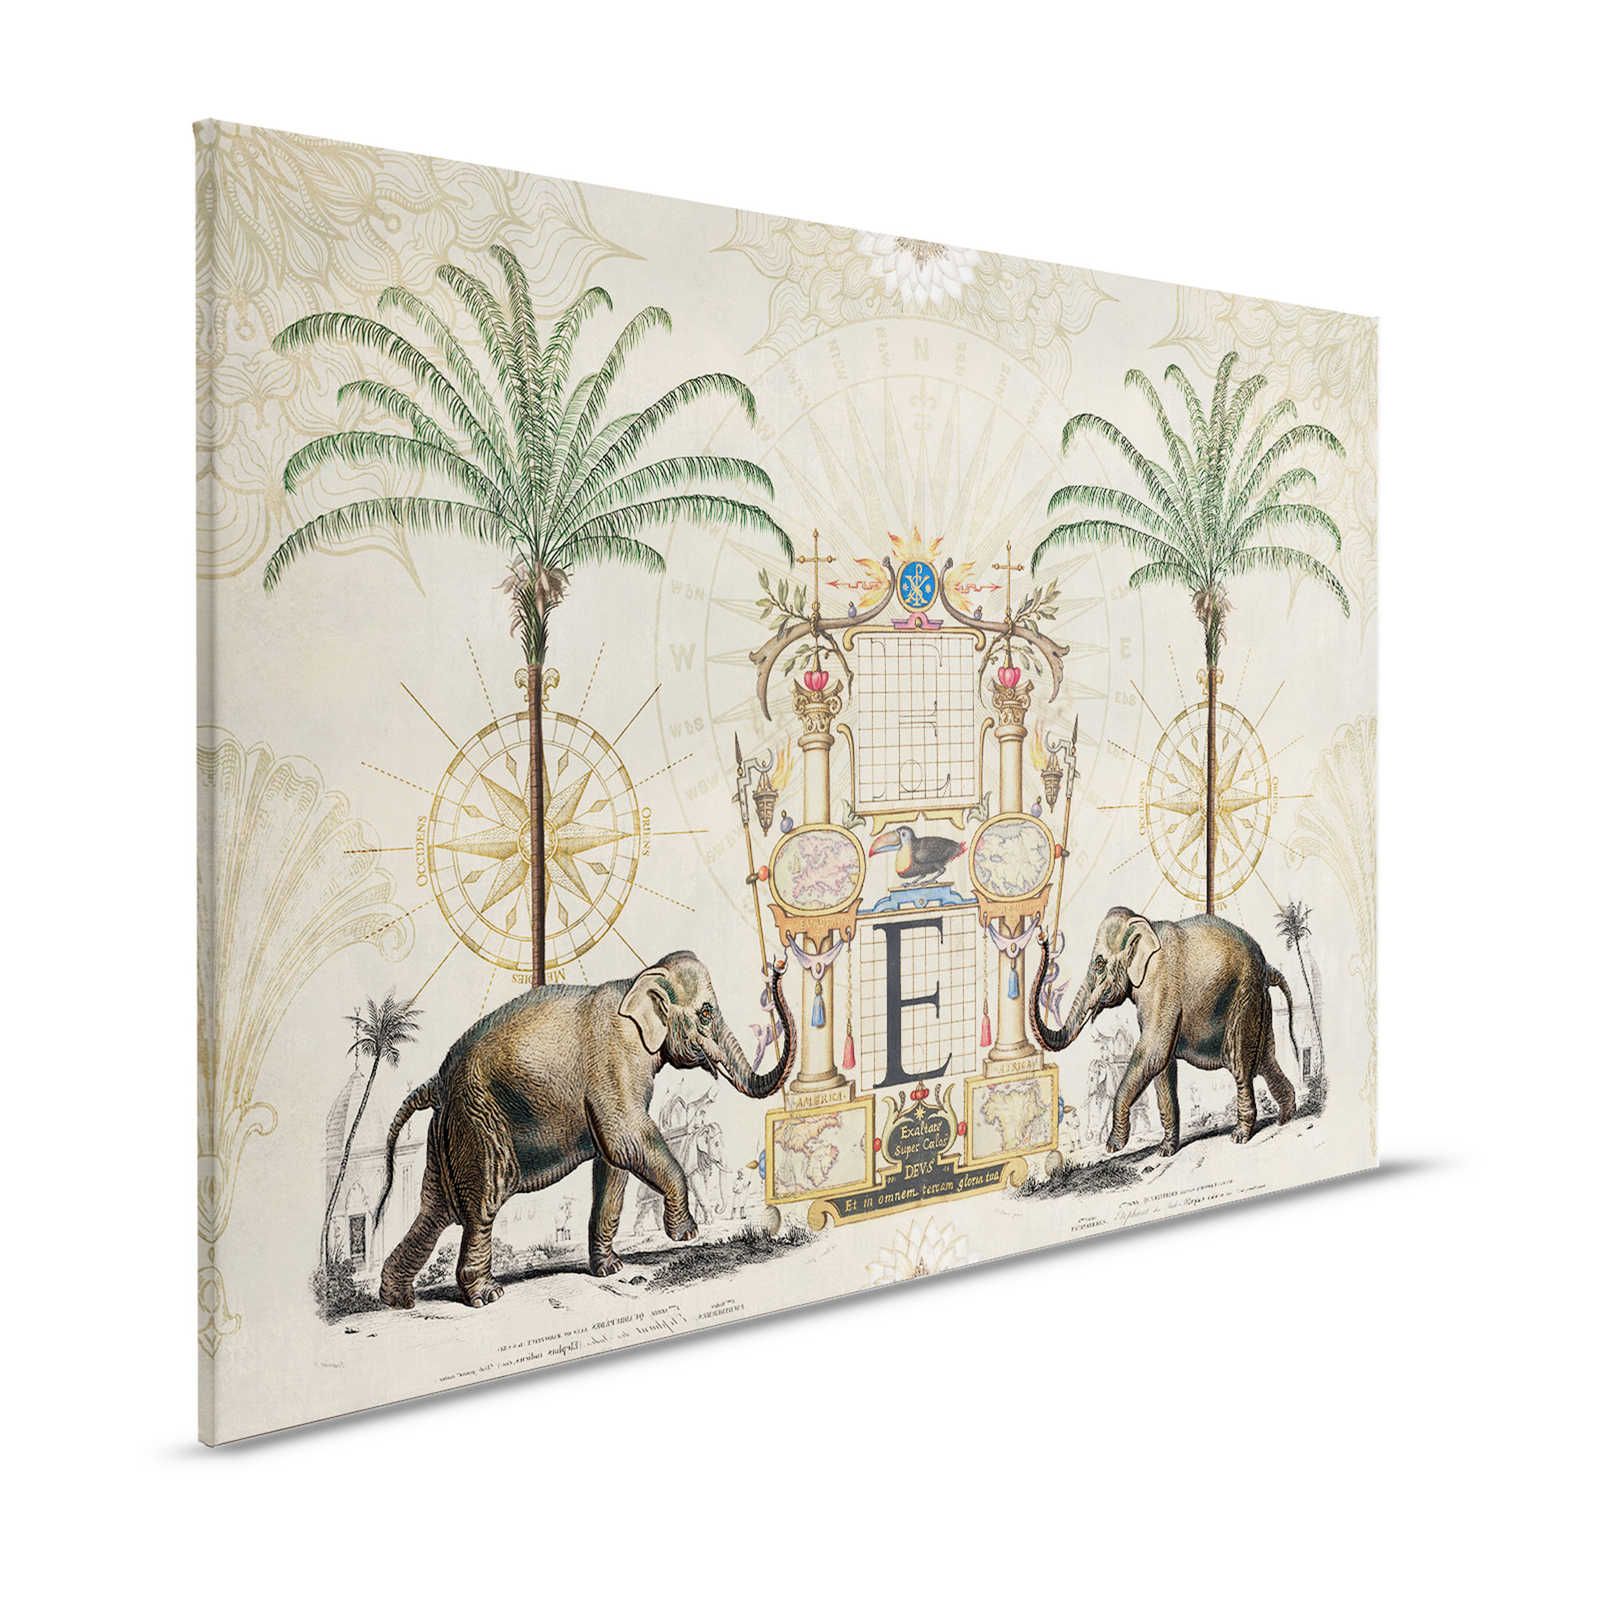 Lienzo Nostalgia con motivo de elefante vintage - 1,20 m x 0,80 m
